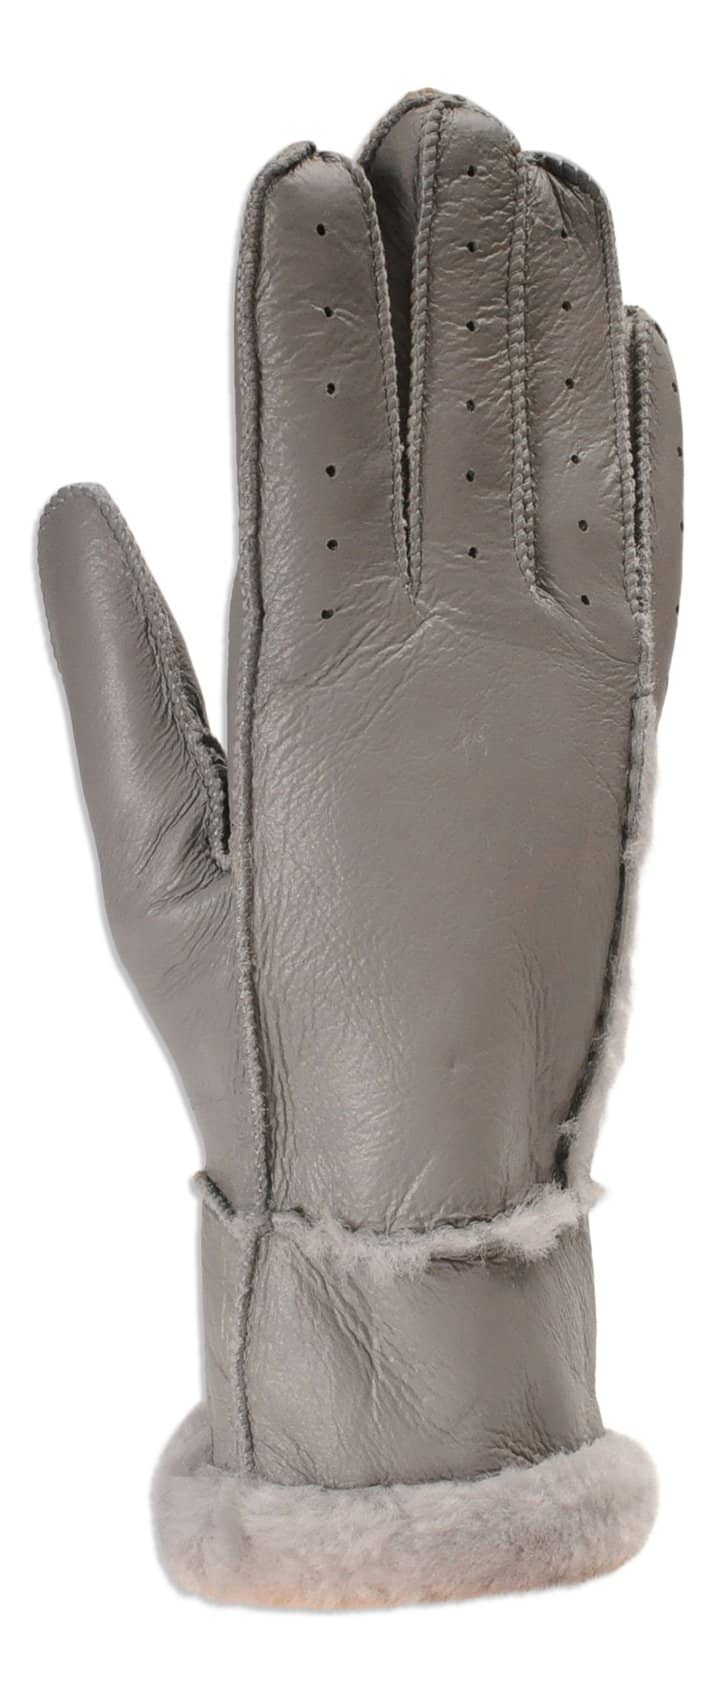 Nordvek womens sheepskin driving gloves 330-100 black pair